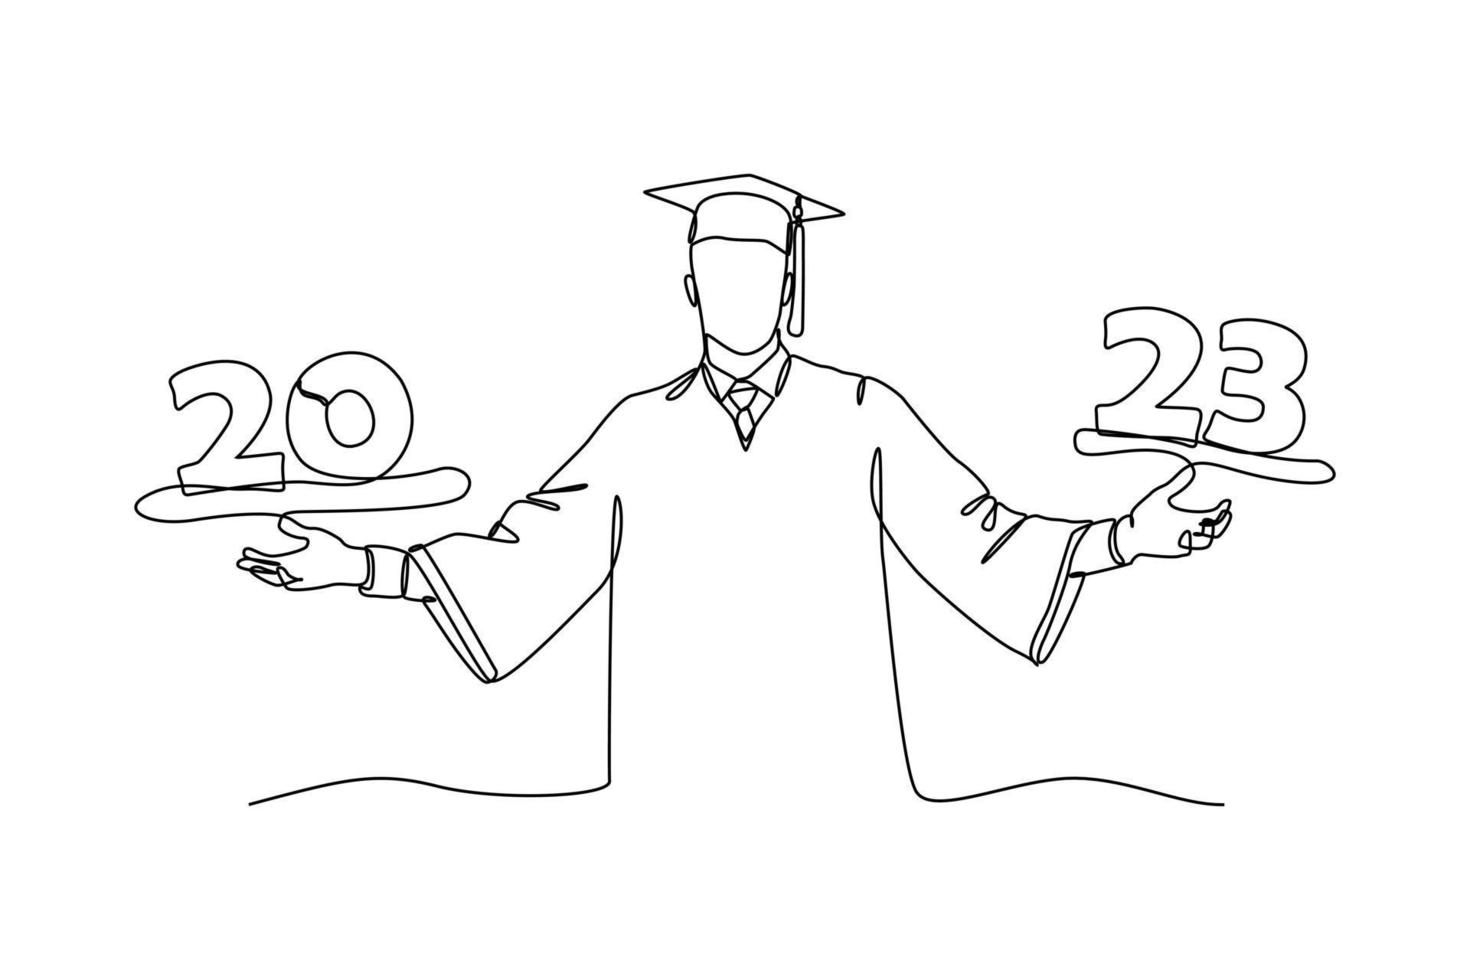 kontinuierlich einer Linie Zeichnung Klasse von 2023. Glückwunsch Absolventen. Abschluss Konzept. Single Linie zeichnen Design Vektor Grafik Illustration.